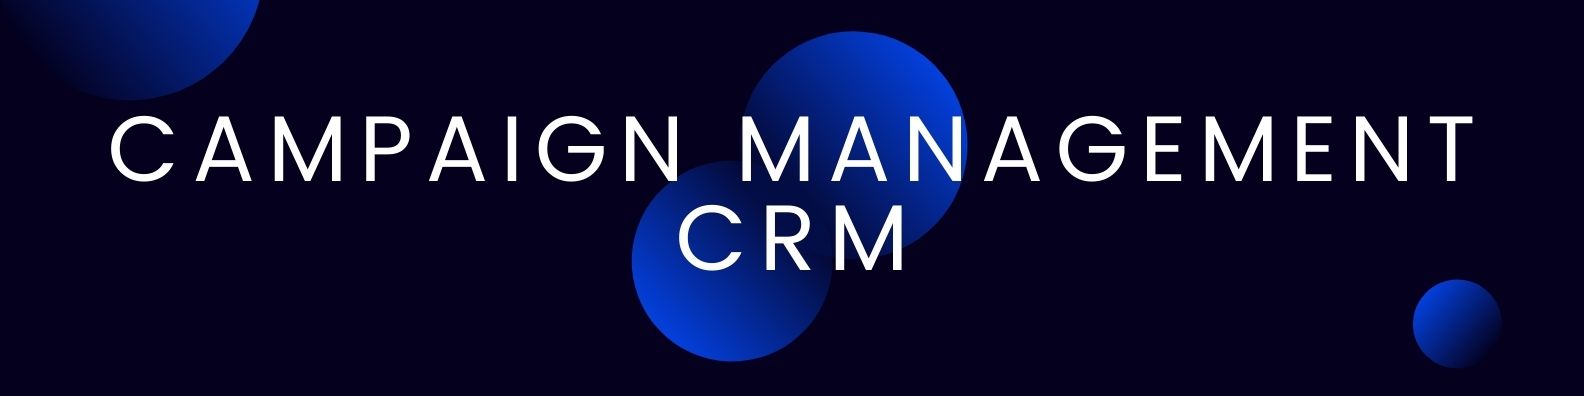 Campaign Management CRM